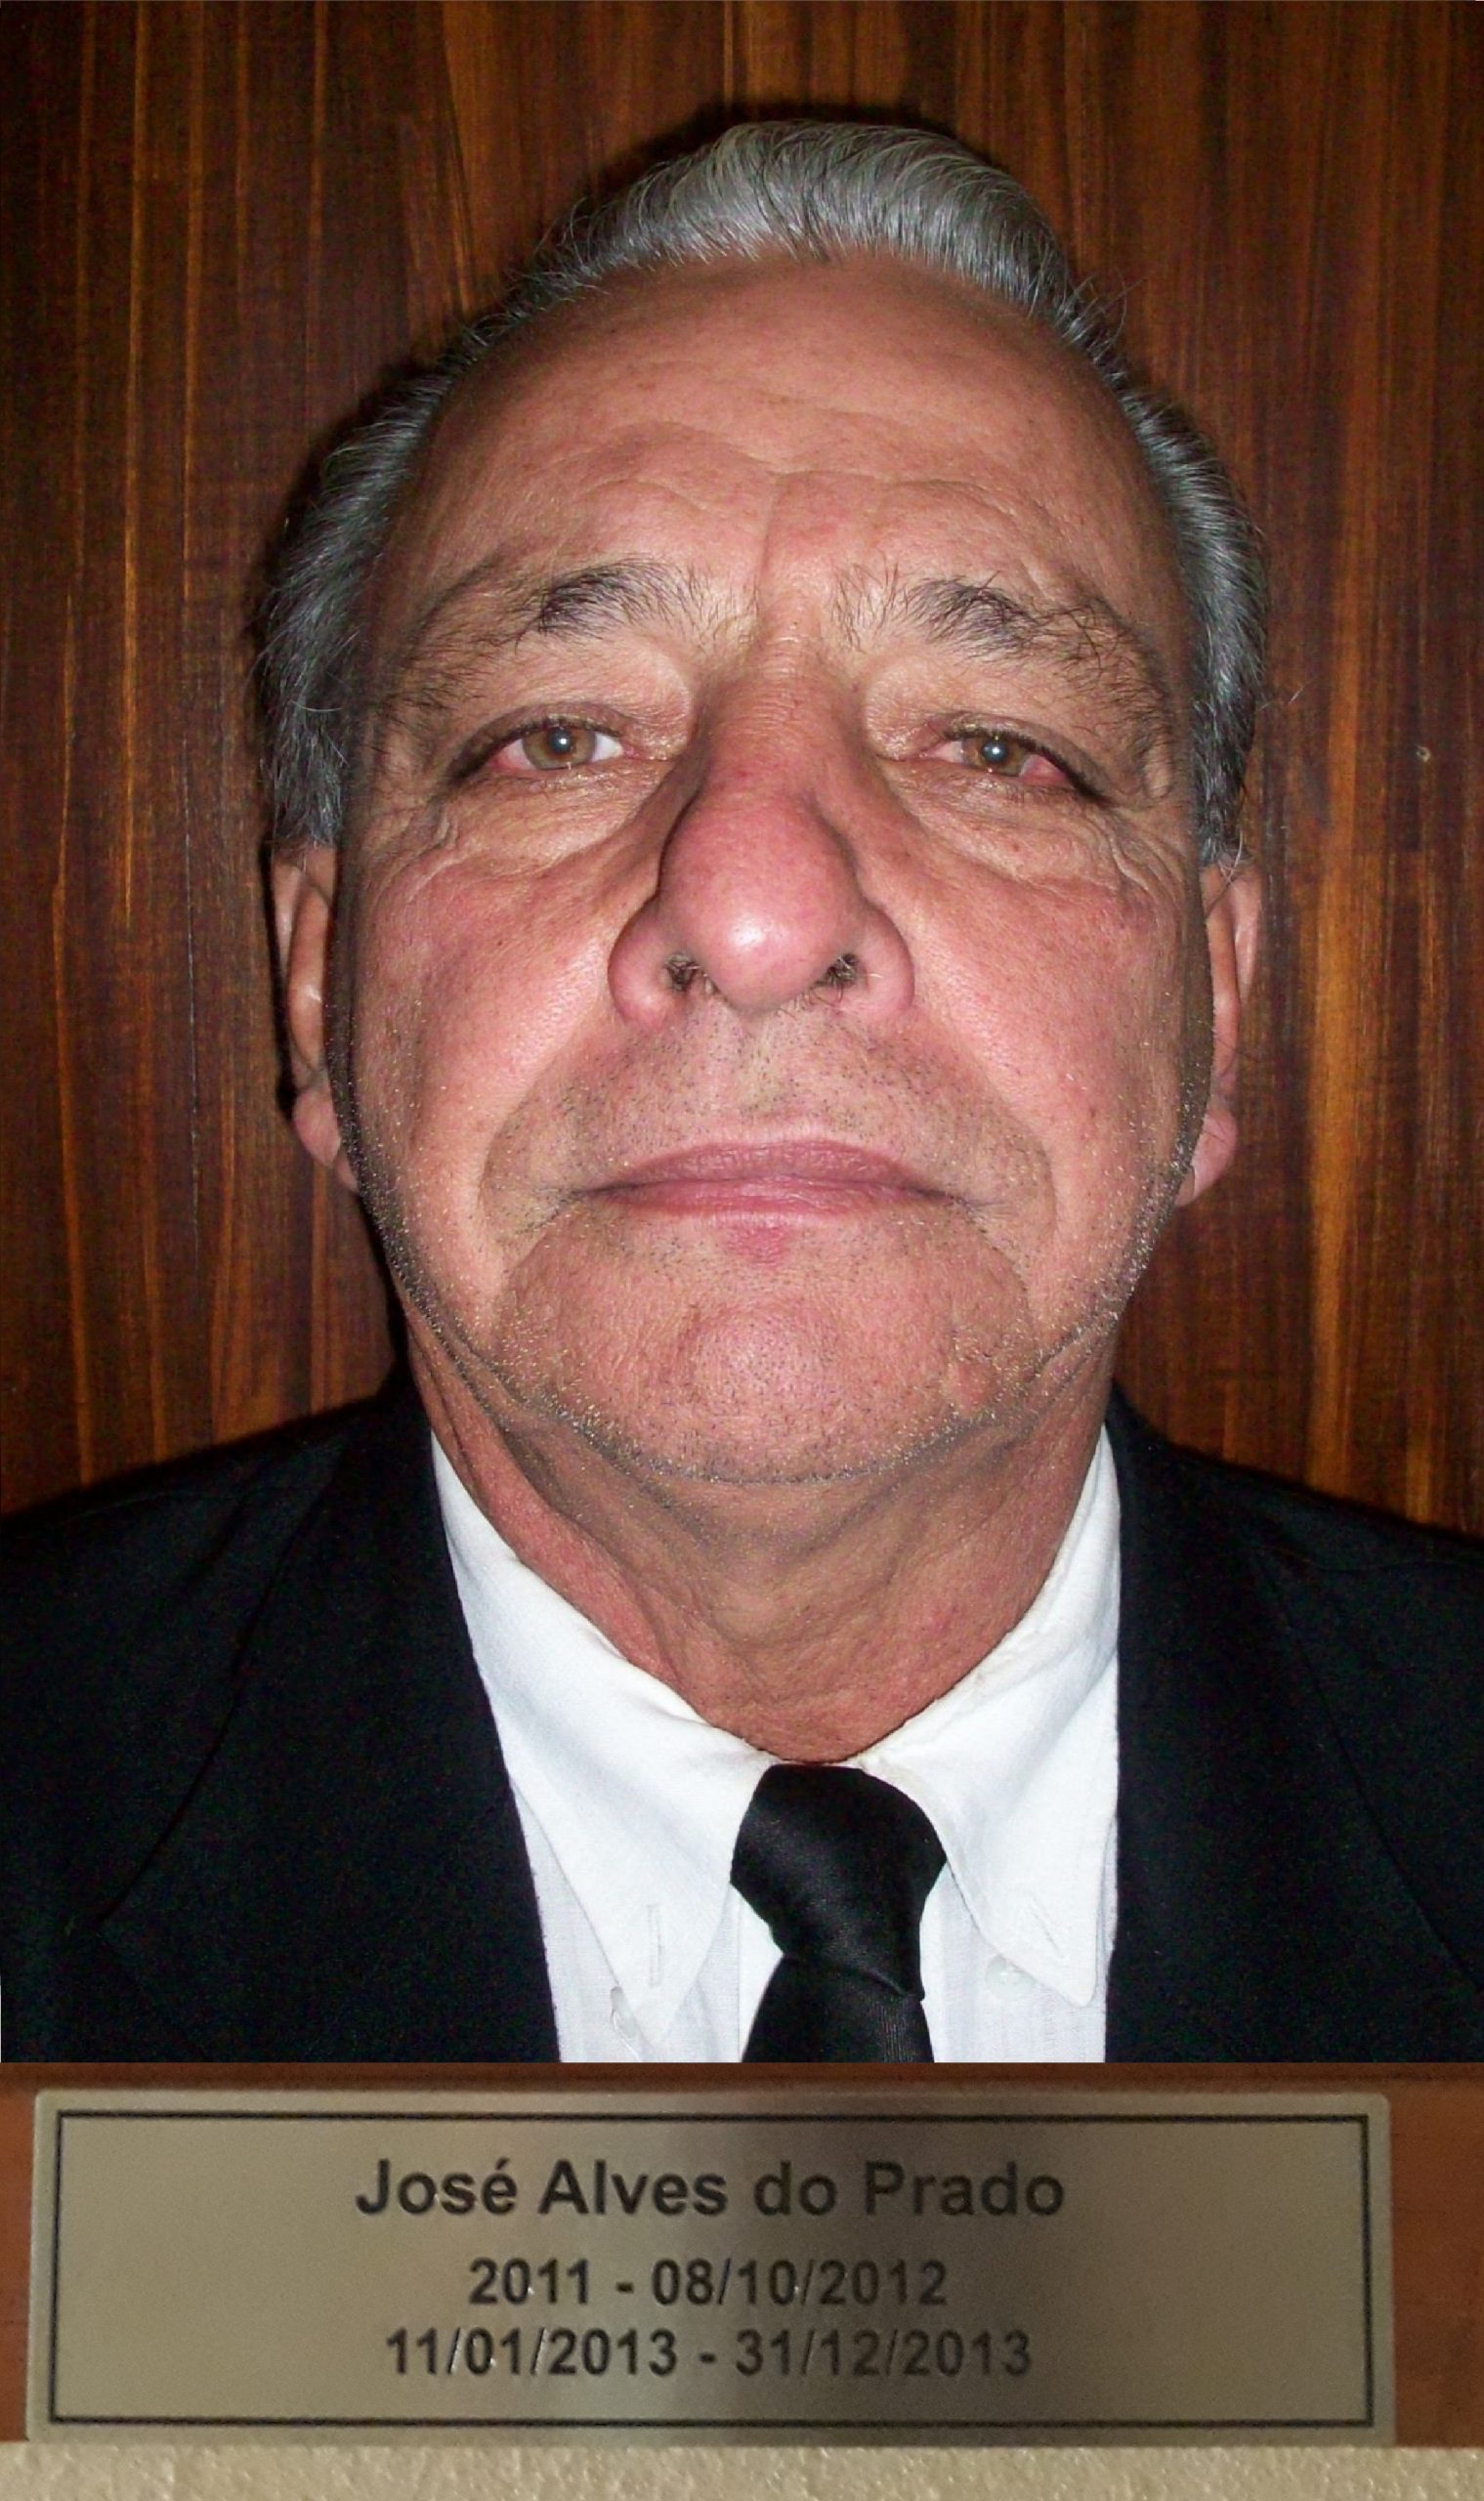 José Alves do Prado